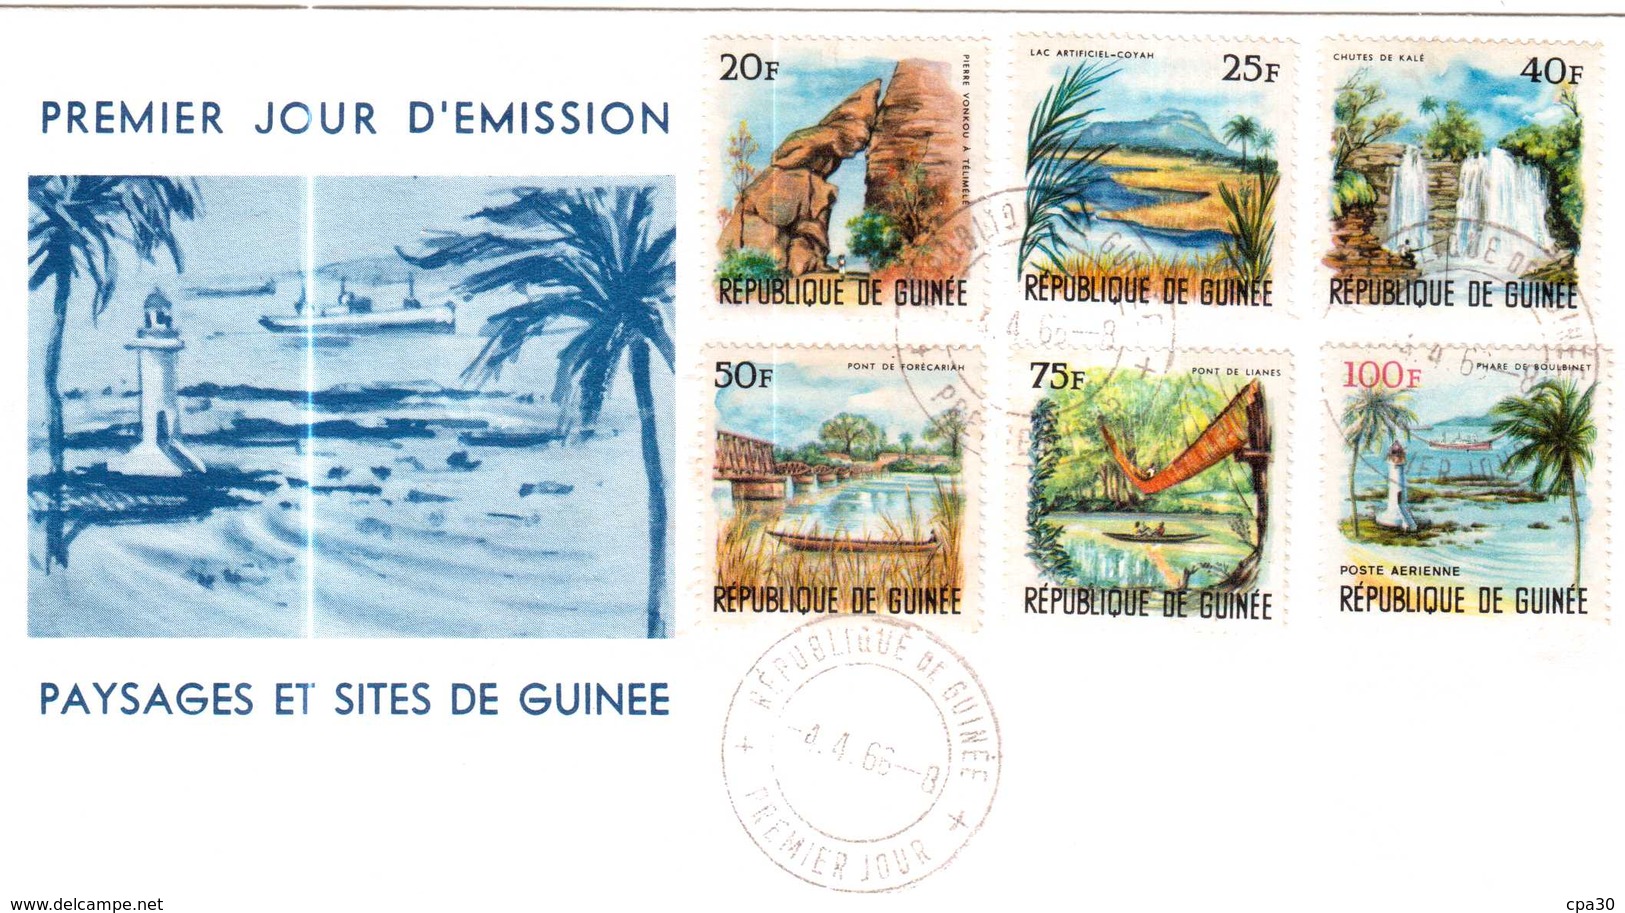 ENVELOPPE PREMIER JOUR D'EMISSION PAYSAGES ET SITES DE GUINEE 1966 - Guinée (1958-...)